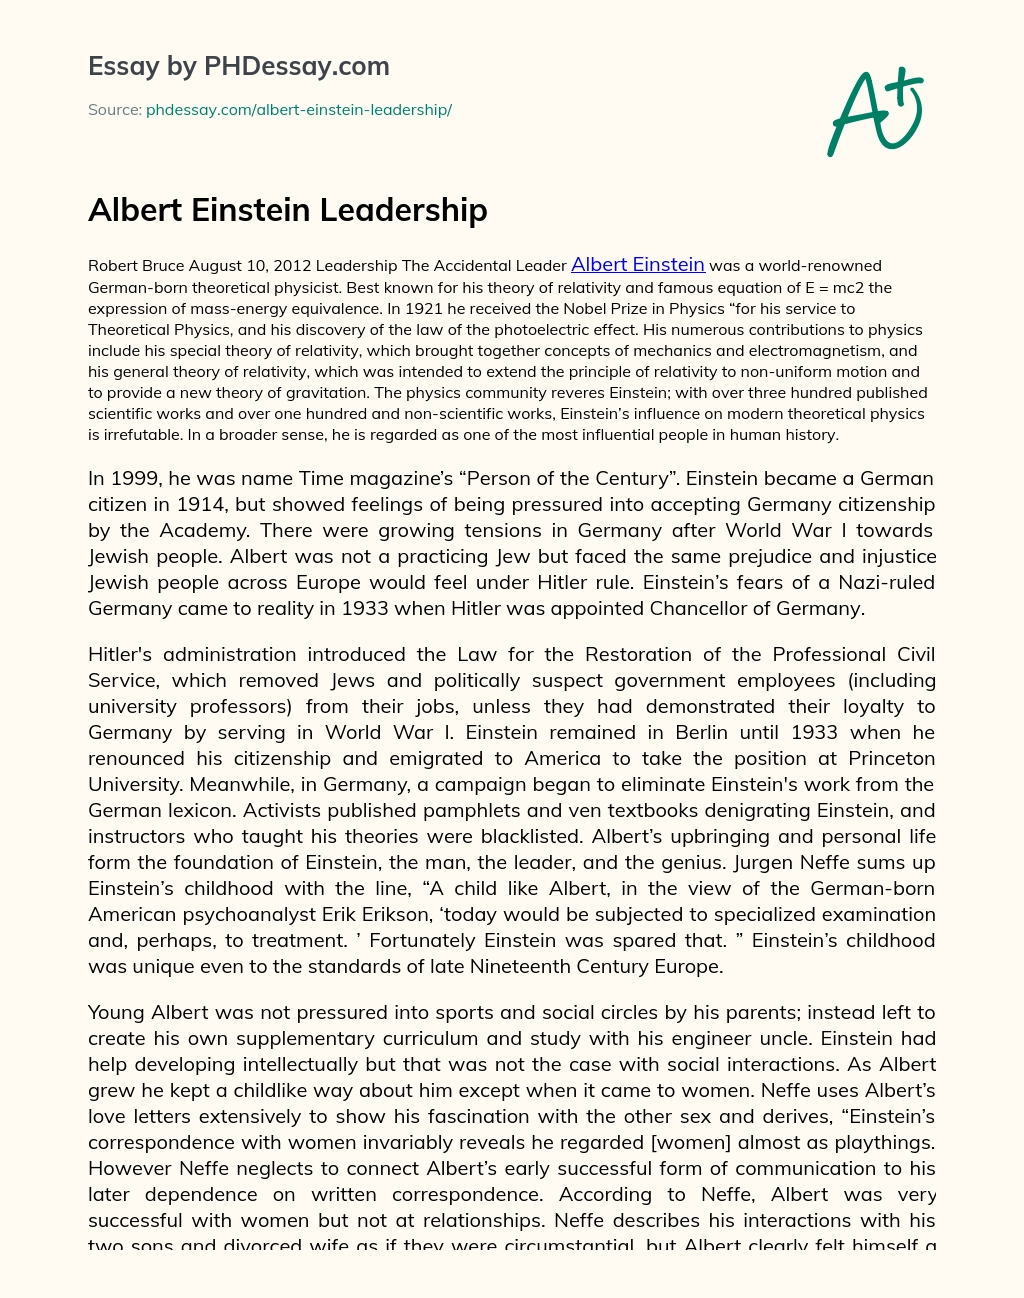 Albert Einstein Leadership essay